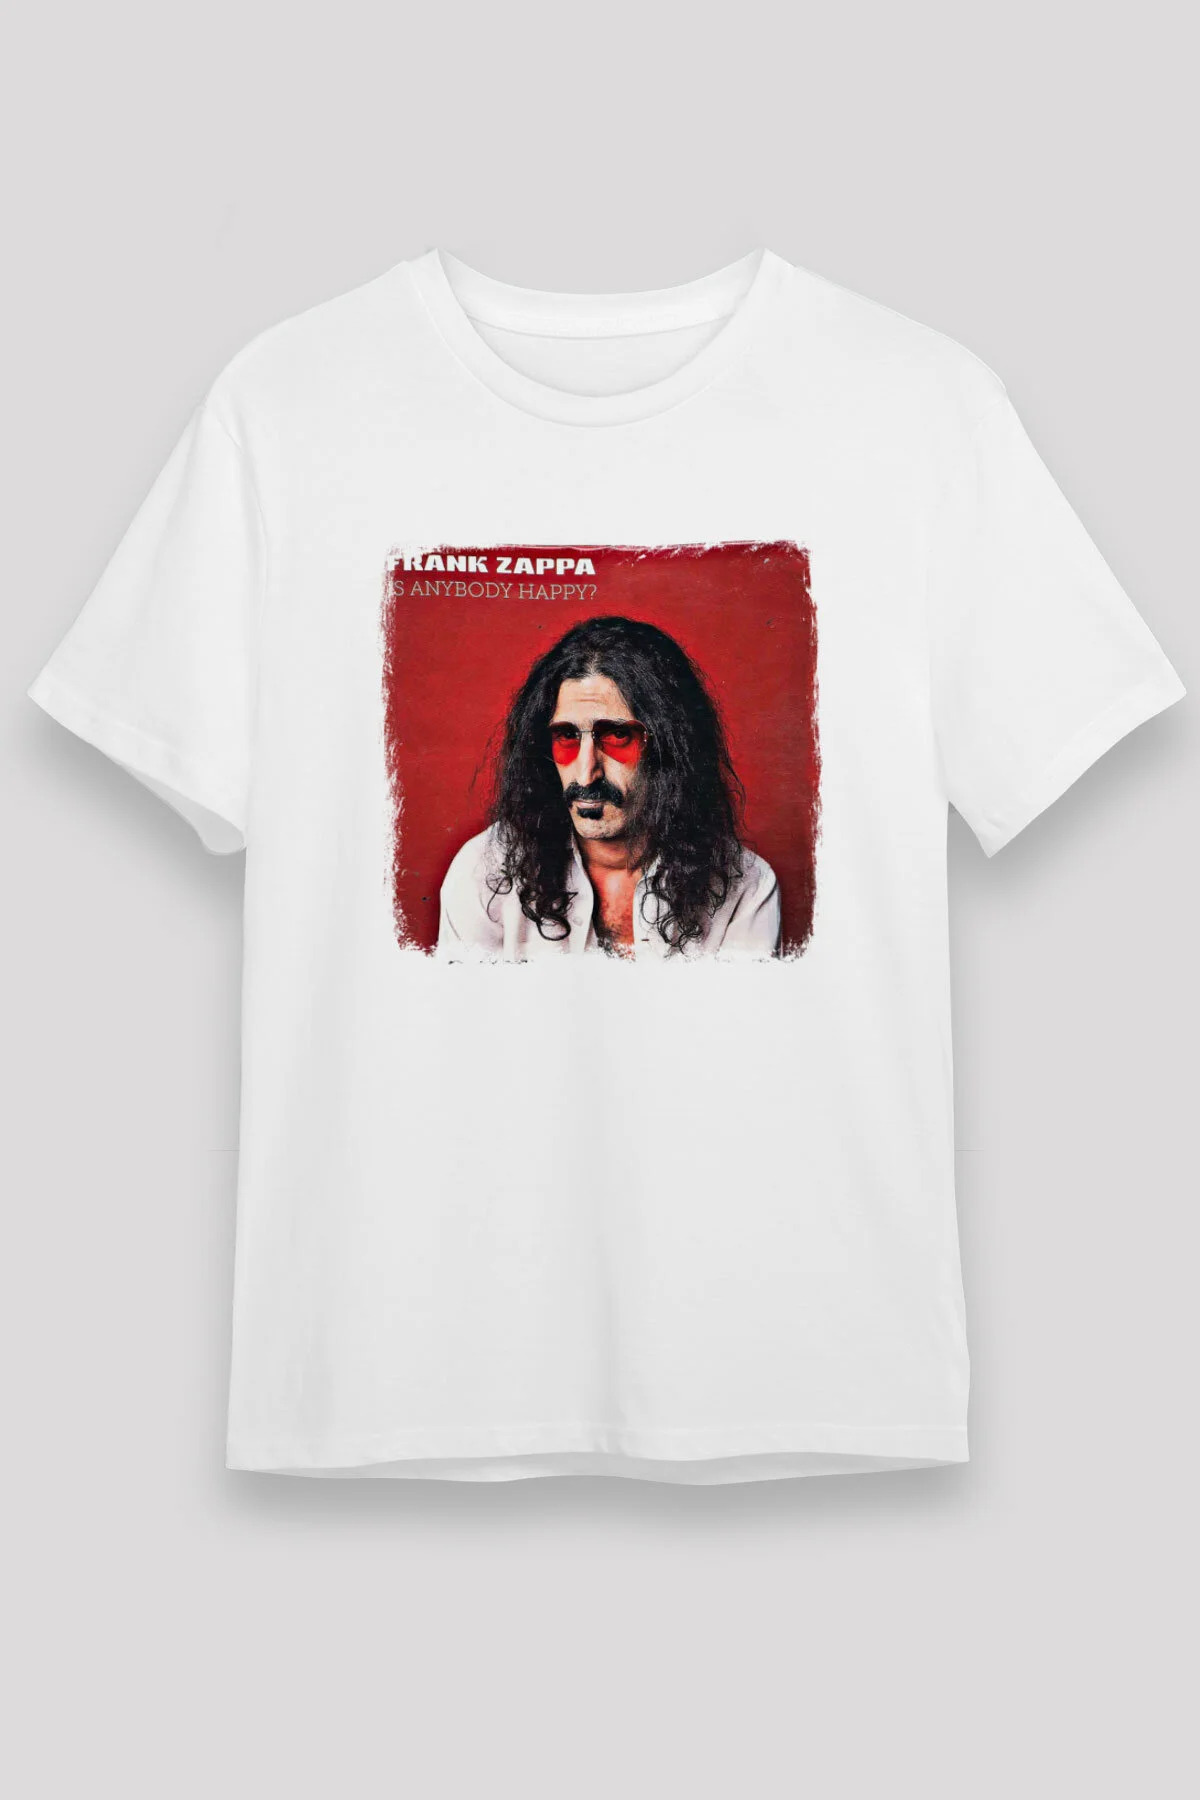 Frank Zappa T shirt , Music Band ,Unisex Tshirt 05